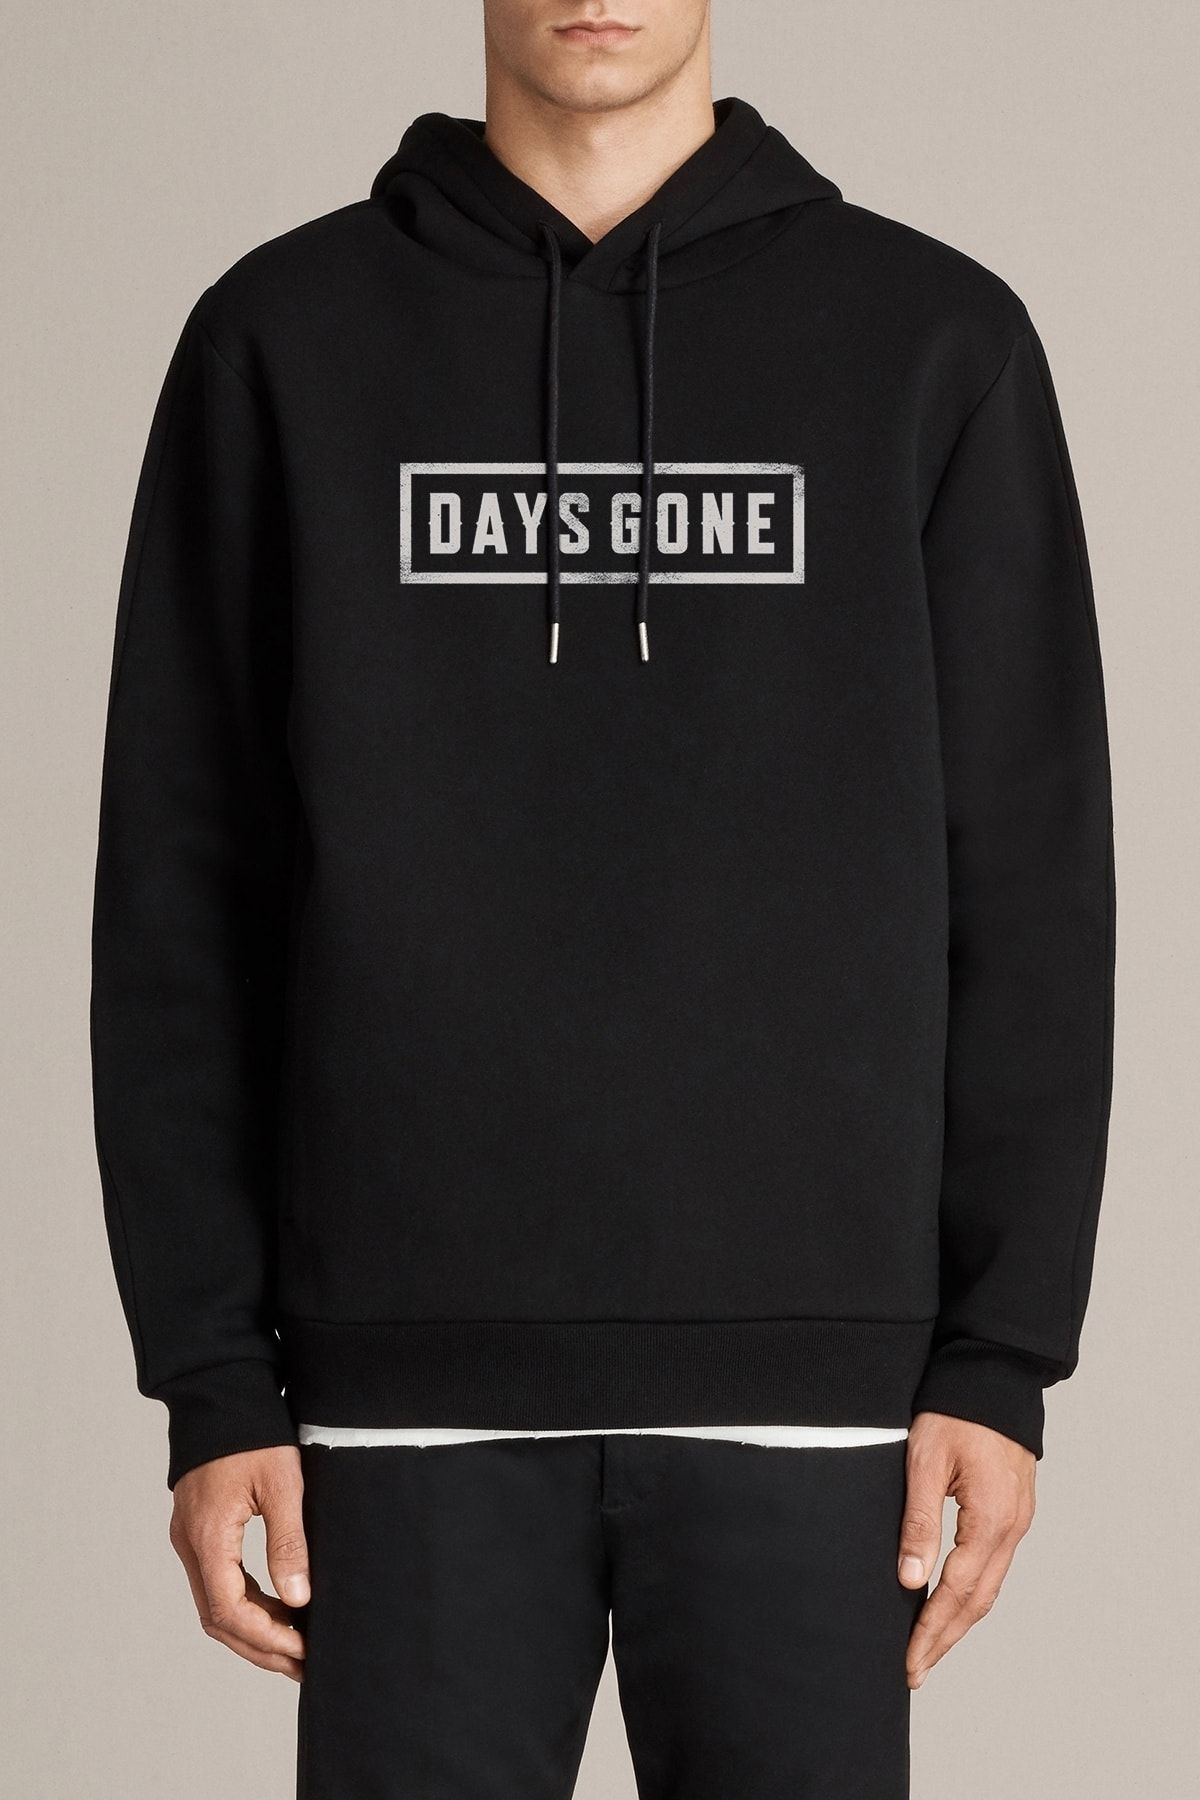 QIVI Erkek  Days Gone Logo Baskılı Siyah Örme Kapşonlu Sweatshirt Uzun Kol